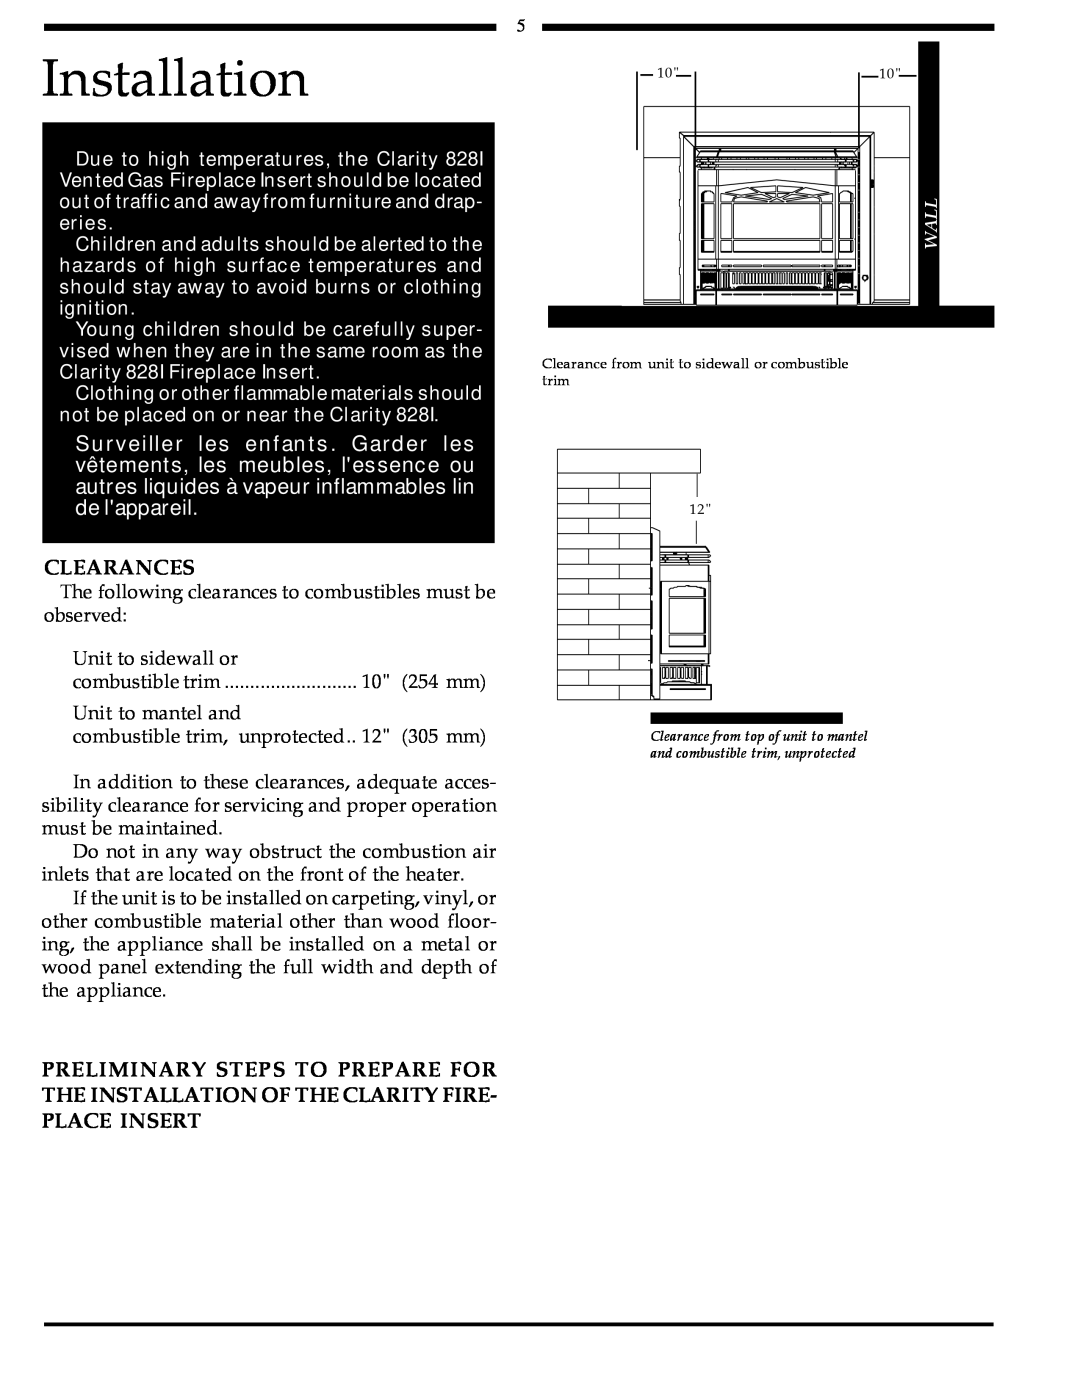 Harman Stove Company 828i manual Installation, Clearances 